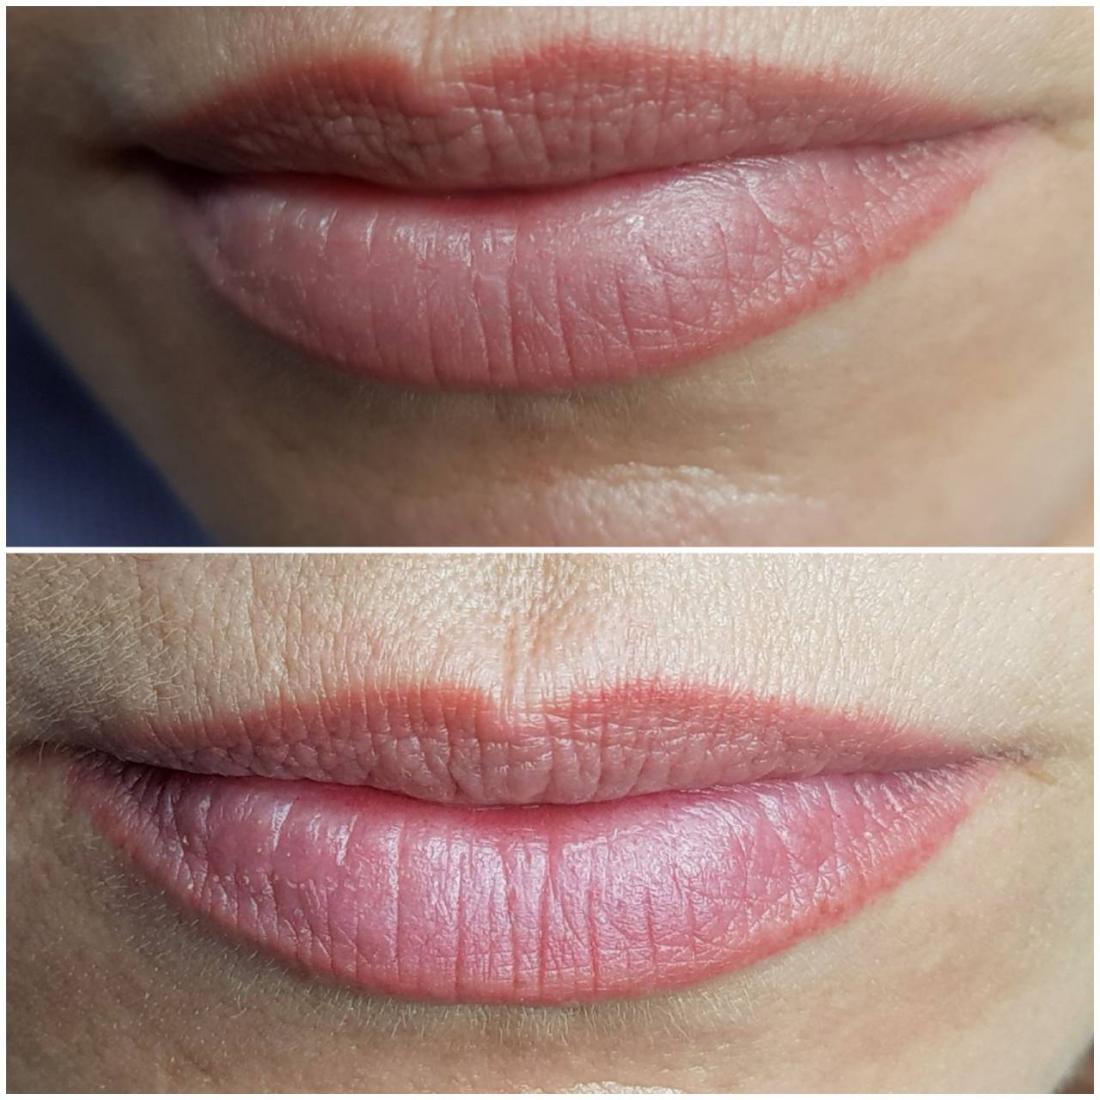 Татуаж губ: фото до и после процедуры, заживление по дням, уход